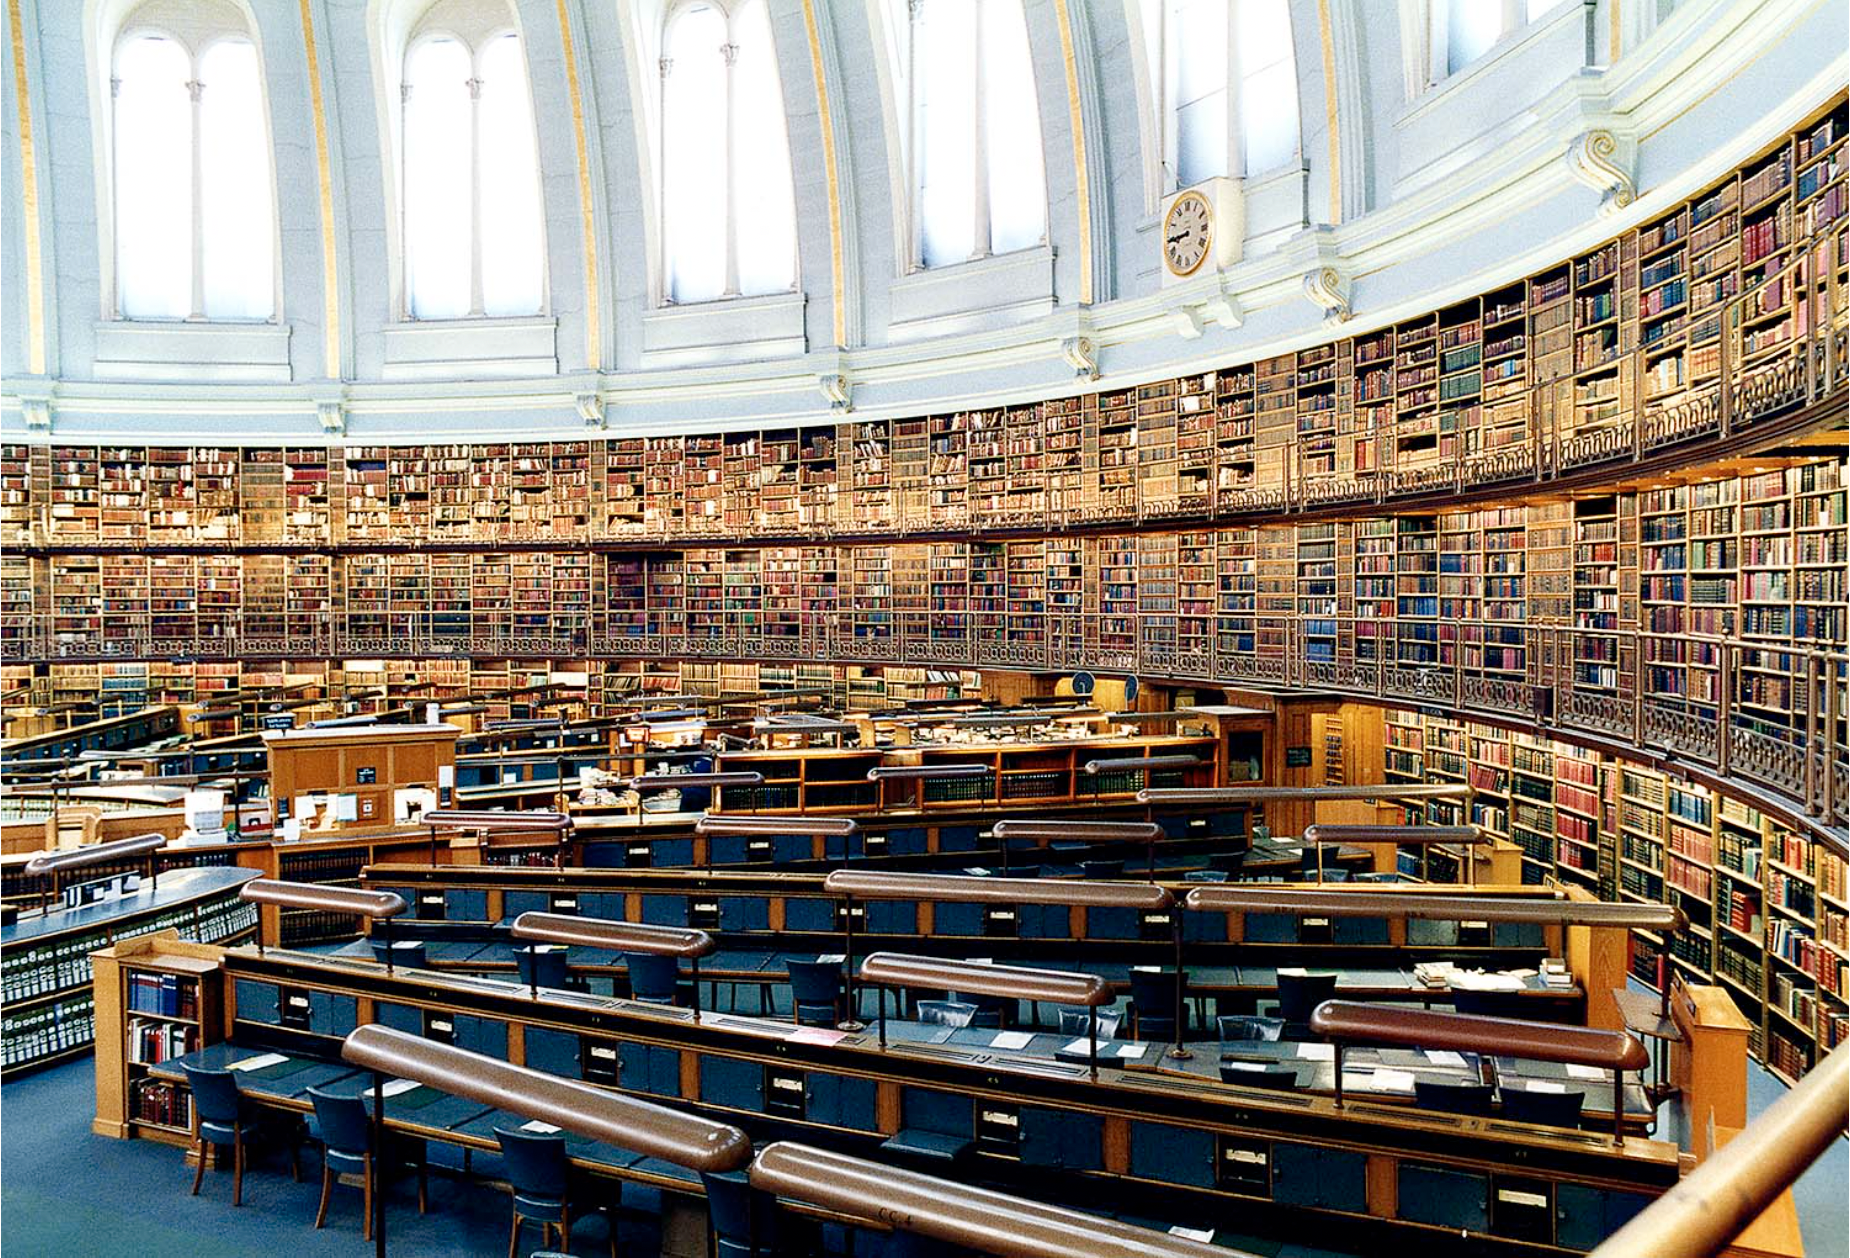 Index library. Библиотека британского музея в Лондоне. Британский музей Лондон читательный зал. Национальная библиотека Великобритании книгохранилище. Британская библиотека (British Library).